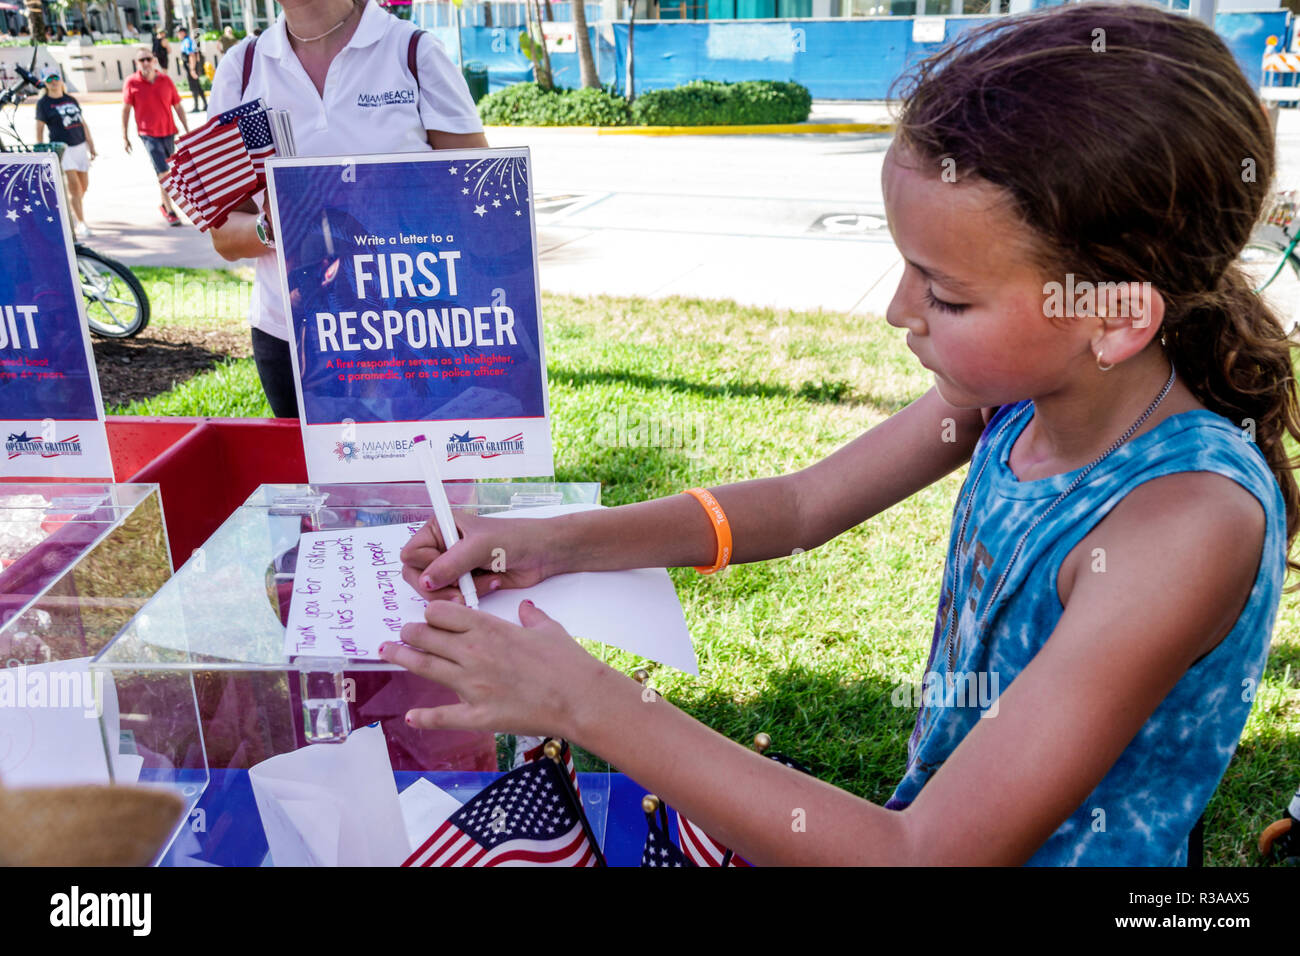 Miami Beach, Florida, Ocean Drive, Veterans Day Parade Aktivitäten, schreiben Brief Dankbarkeit amerikanischen Helden Ersthelfer, Mädchen, weibliche Kinder Kinder chil Stockfoto